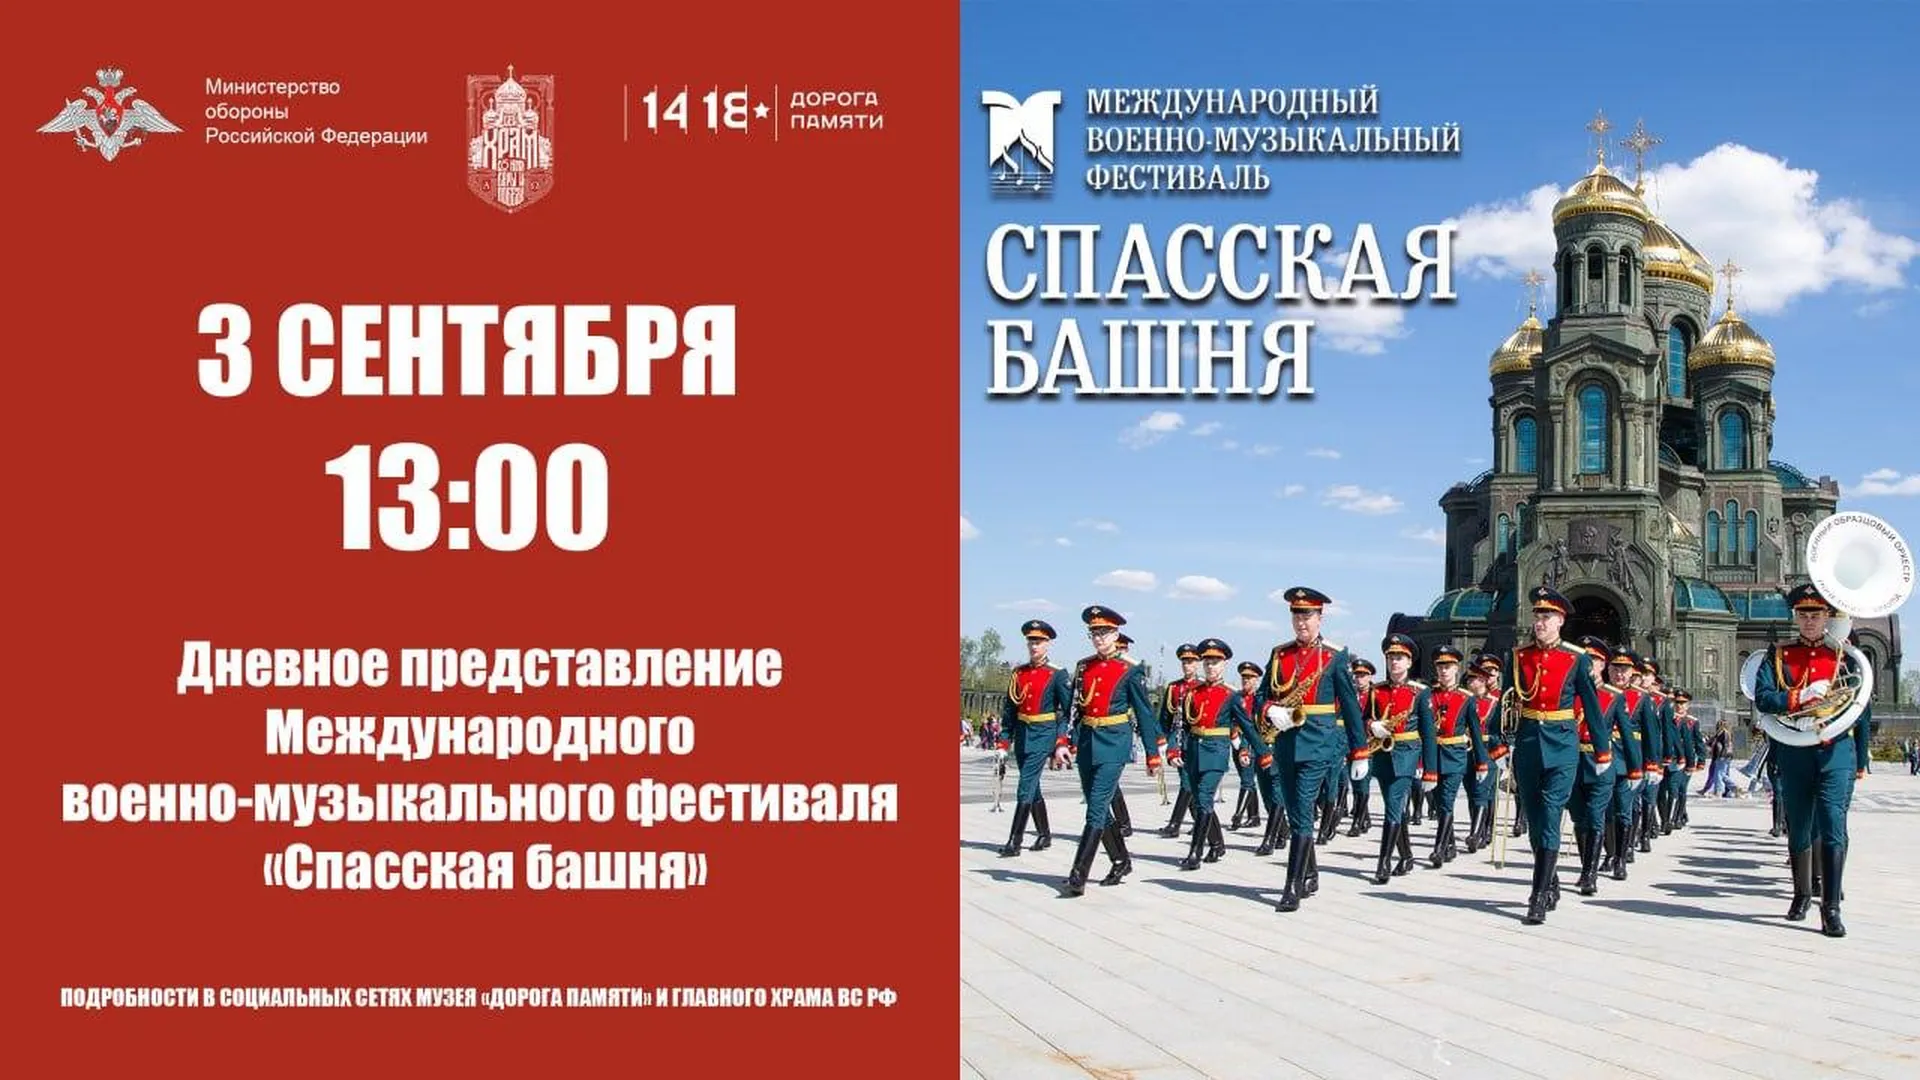 Военно‑музыкальный фестиваль «Спасская башня» пройдет в Подмосковье 3 сентября